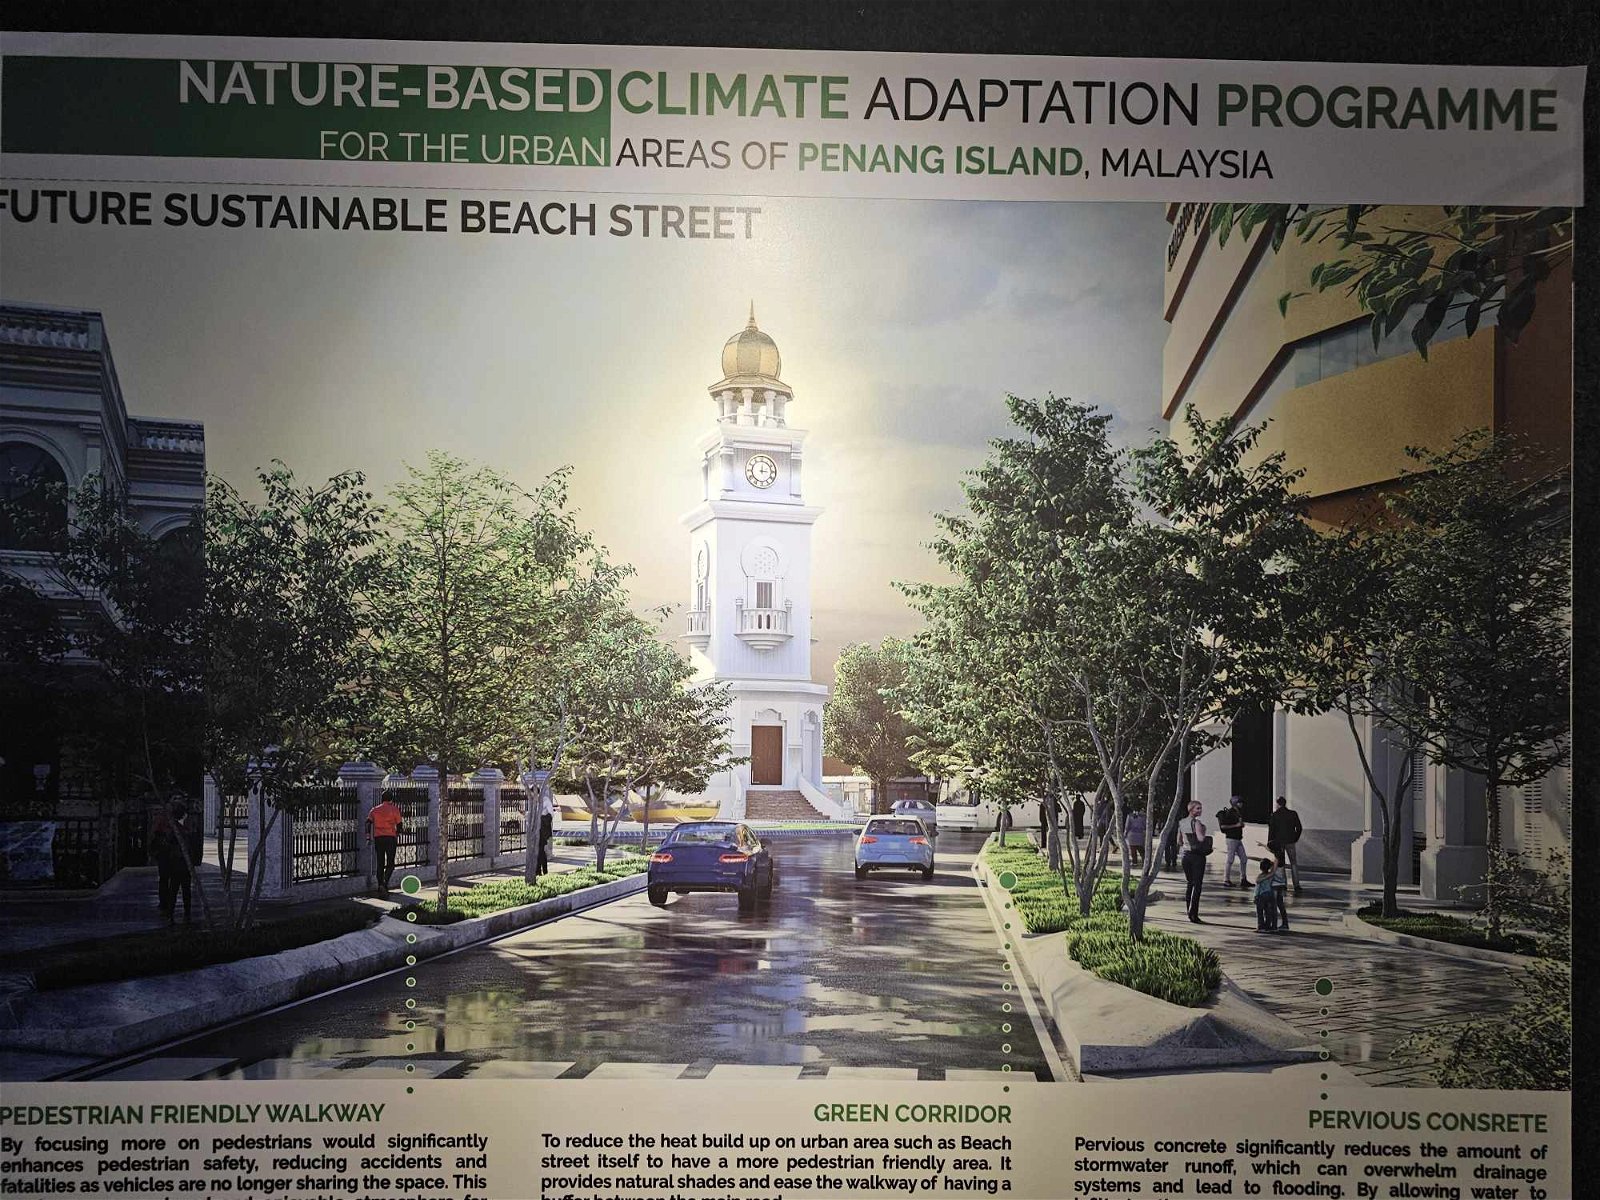 槟岛市政厅计划扩大土库街步行道，并种植花草树木，对抗气候变迁，同时绿化街道。